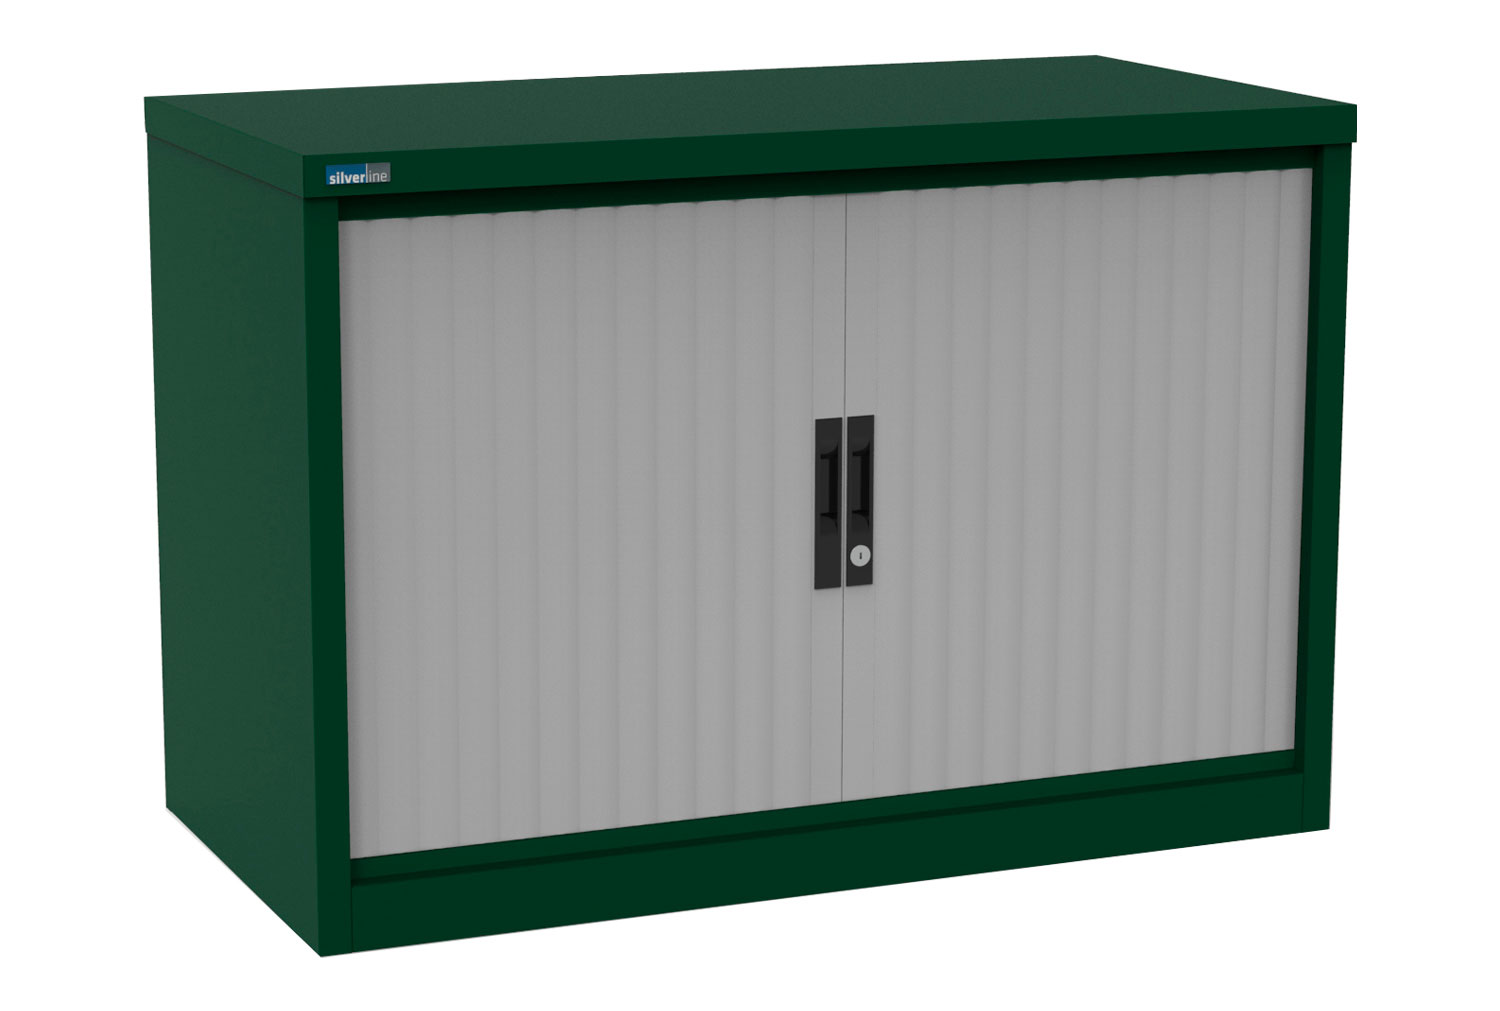 Silverline Kontrax Side Tambour Door Office Cupboards 80cm Wide, 80wx51dx69h (cm), Light Grey, Green